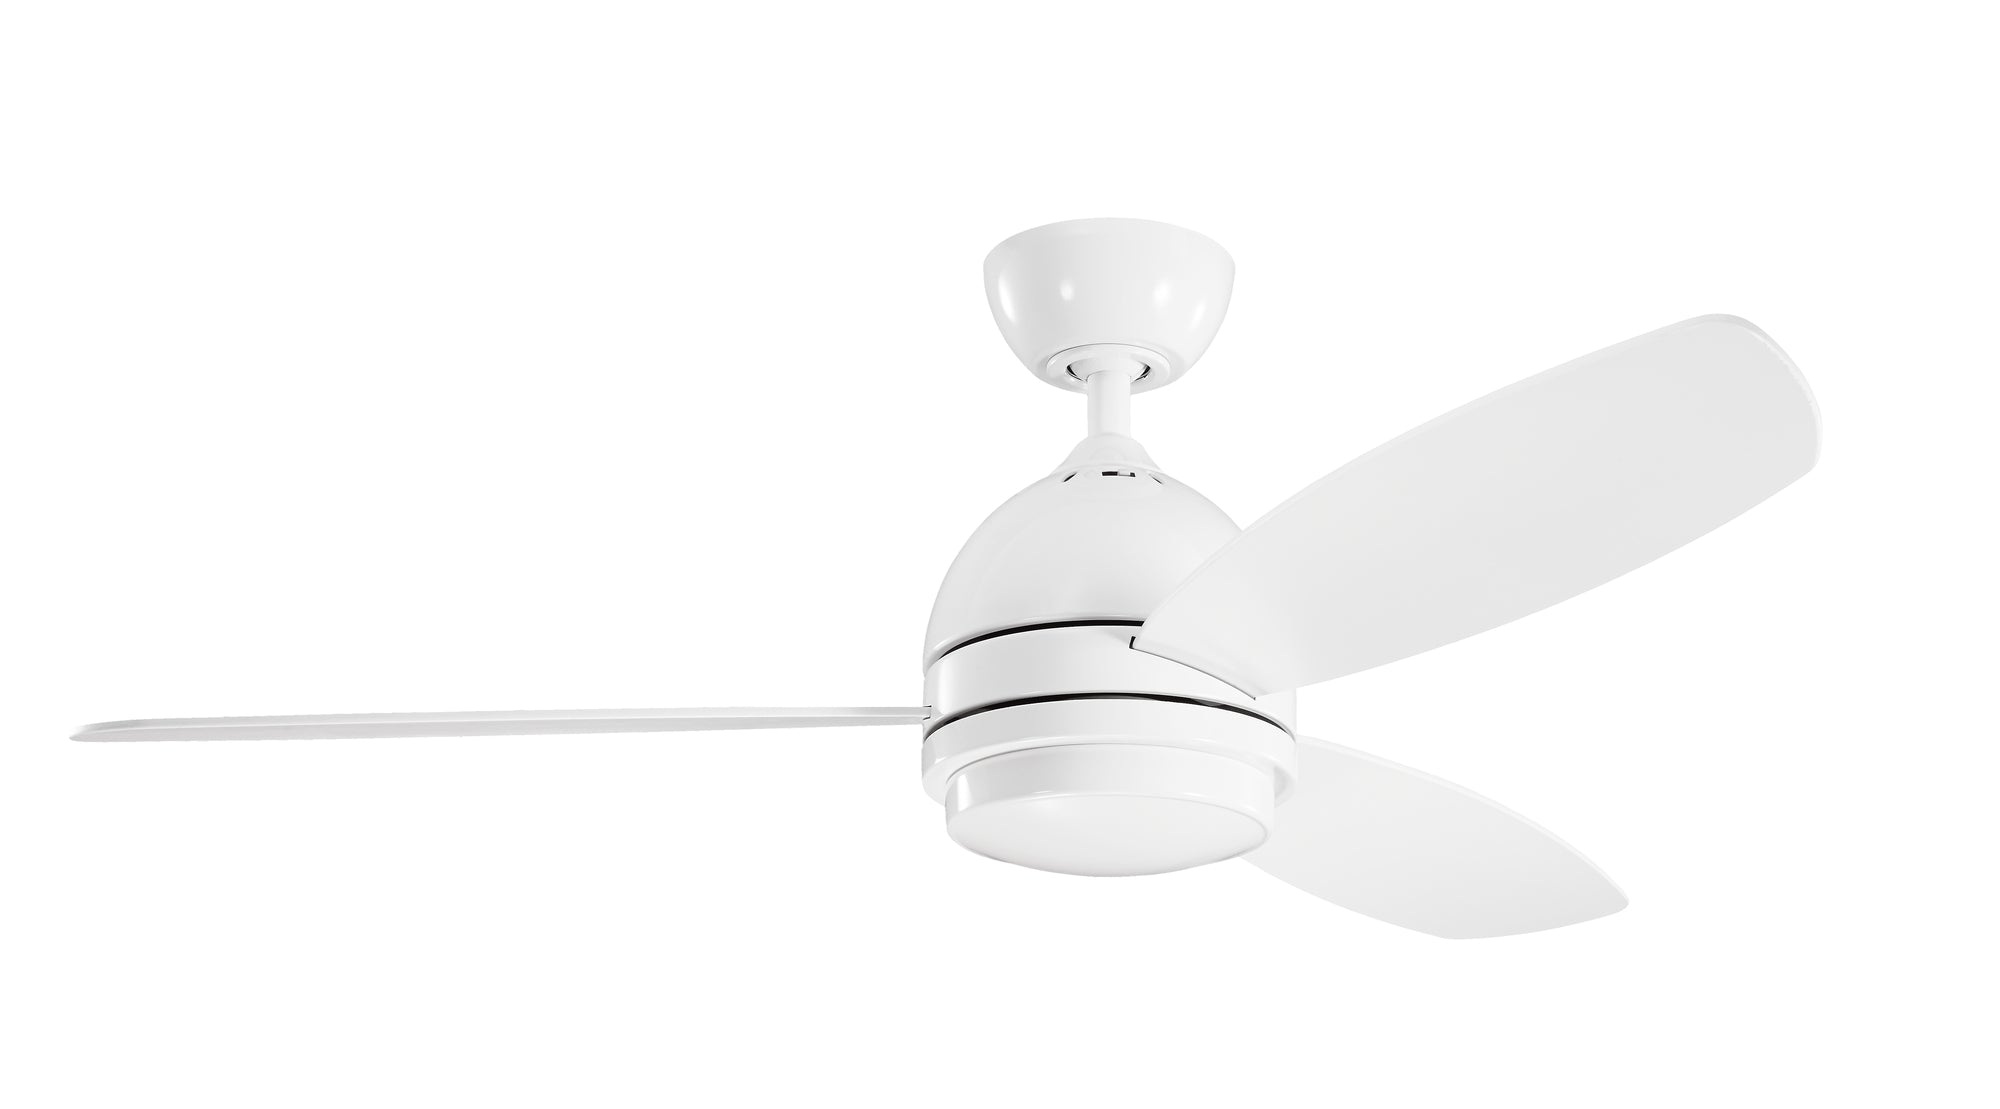 VASSAR Ceiling fan White INTEGRATED LED - 330002WH | KICHLER